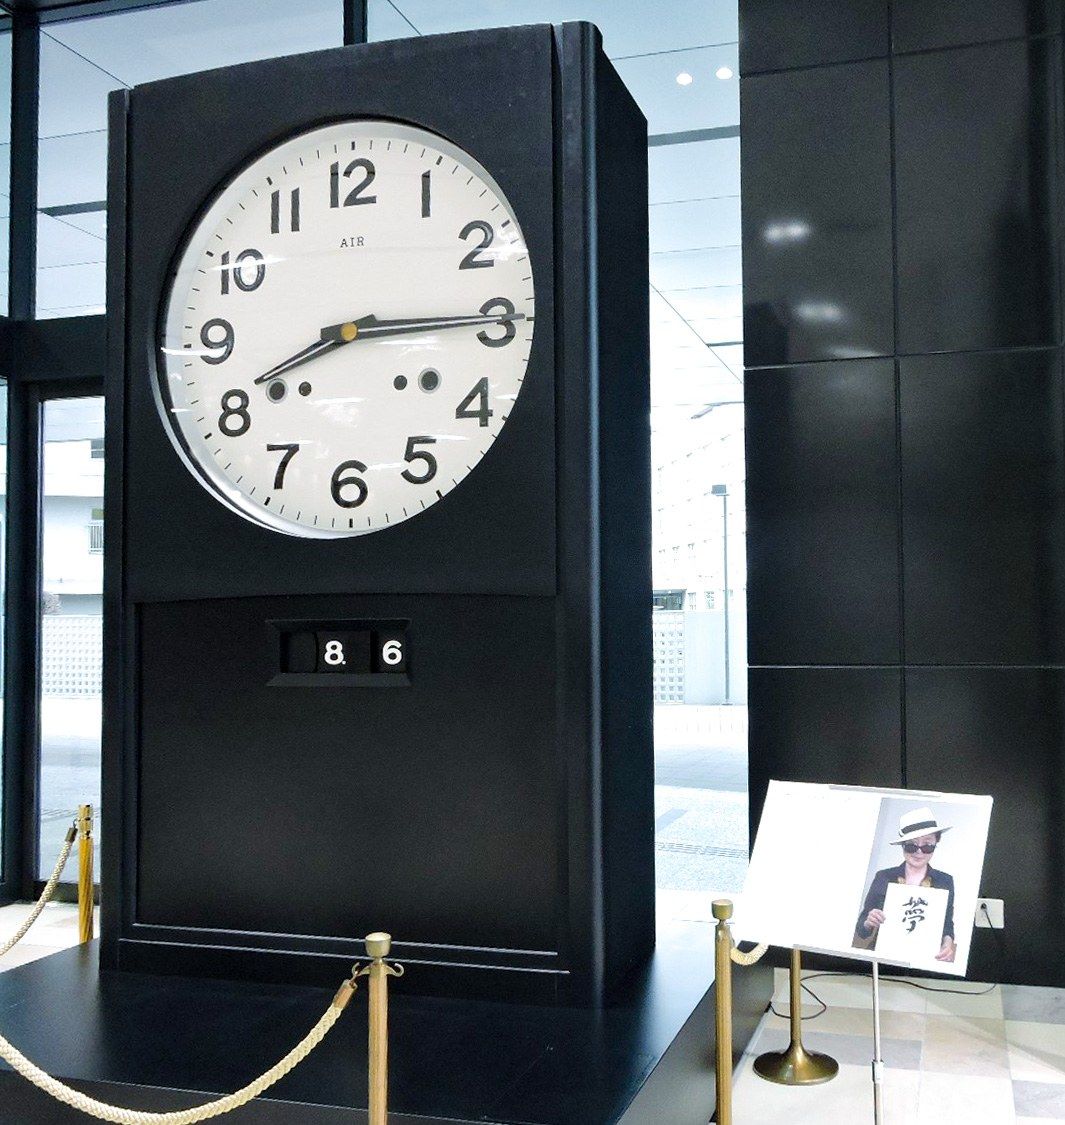 La obra Hiroshima Air Clock, de Ono Yōko, expuesta en el vestíbulo de la cadena Hiroshima Telecasting. (Fotografía de Fujisawa Shihoko).